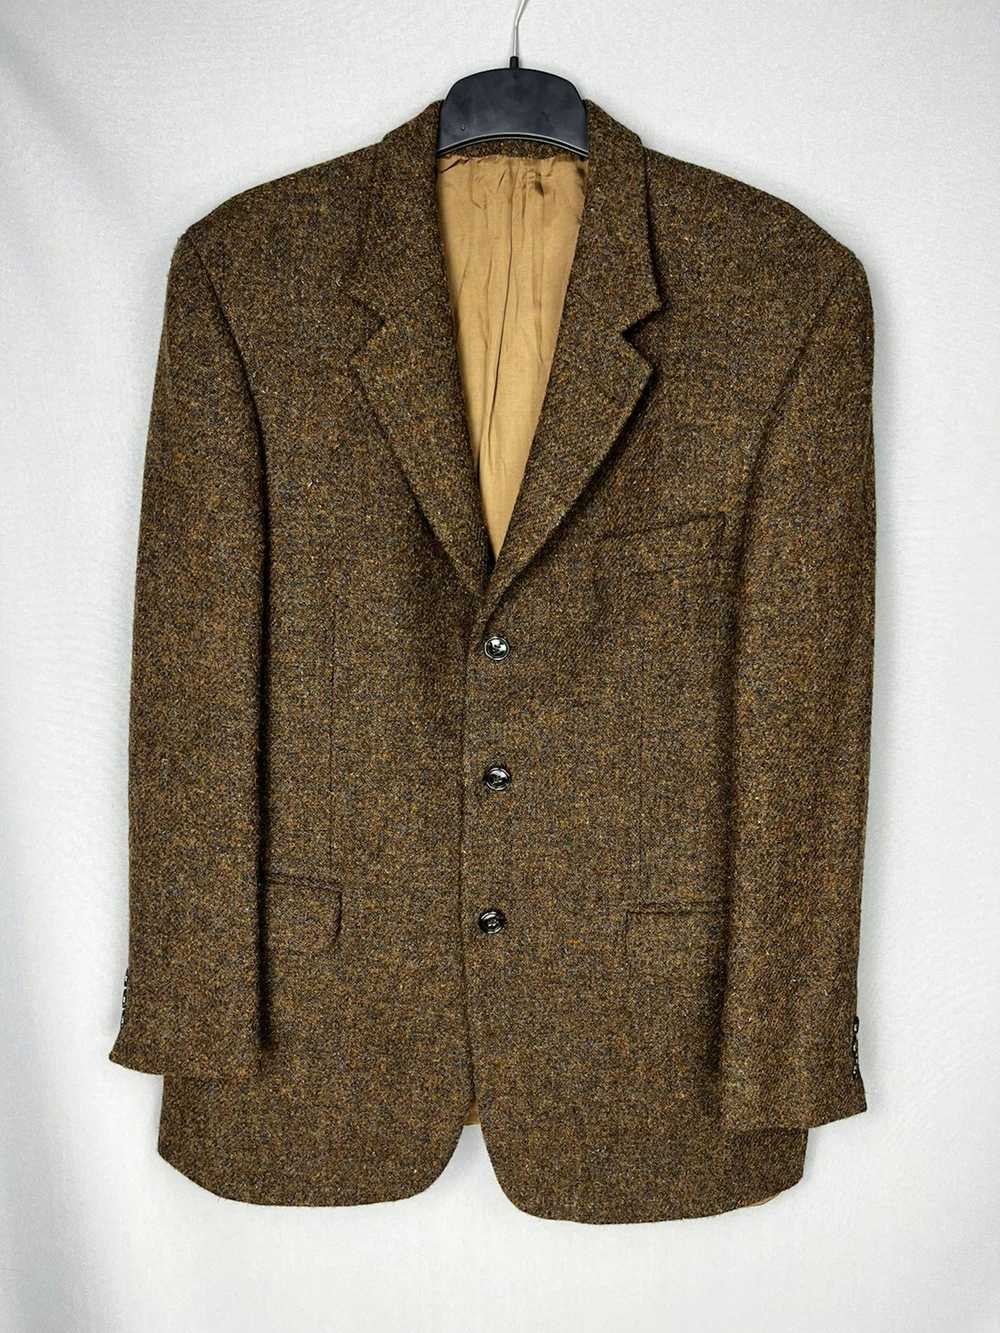 Harris Tweed Harris Tweed Men's Coat THICK WOOL J… - image 1